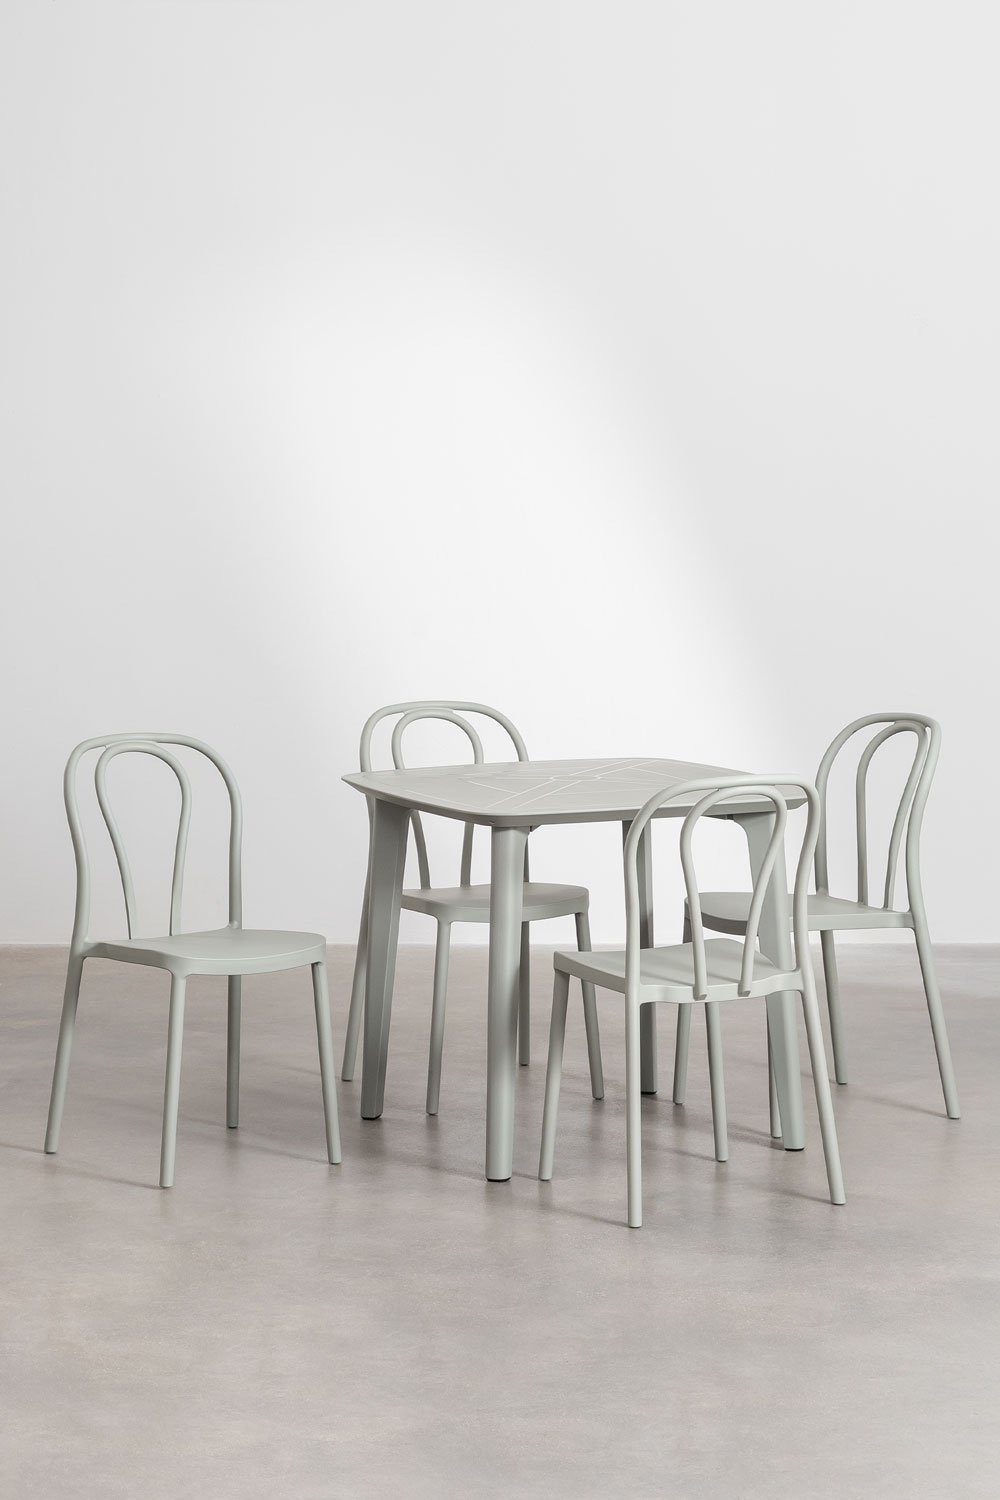 Zestaw kwadratowego stołu z polietylenu (85x85 cm) Nati i 4 krzesła ogrodowe Mizzi z możliwością sztaplowania, obrazek w galerii 1